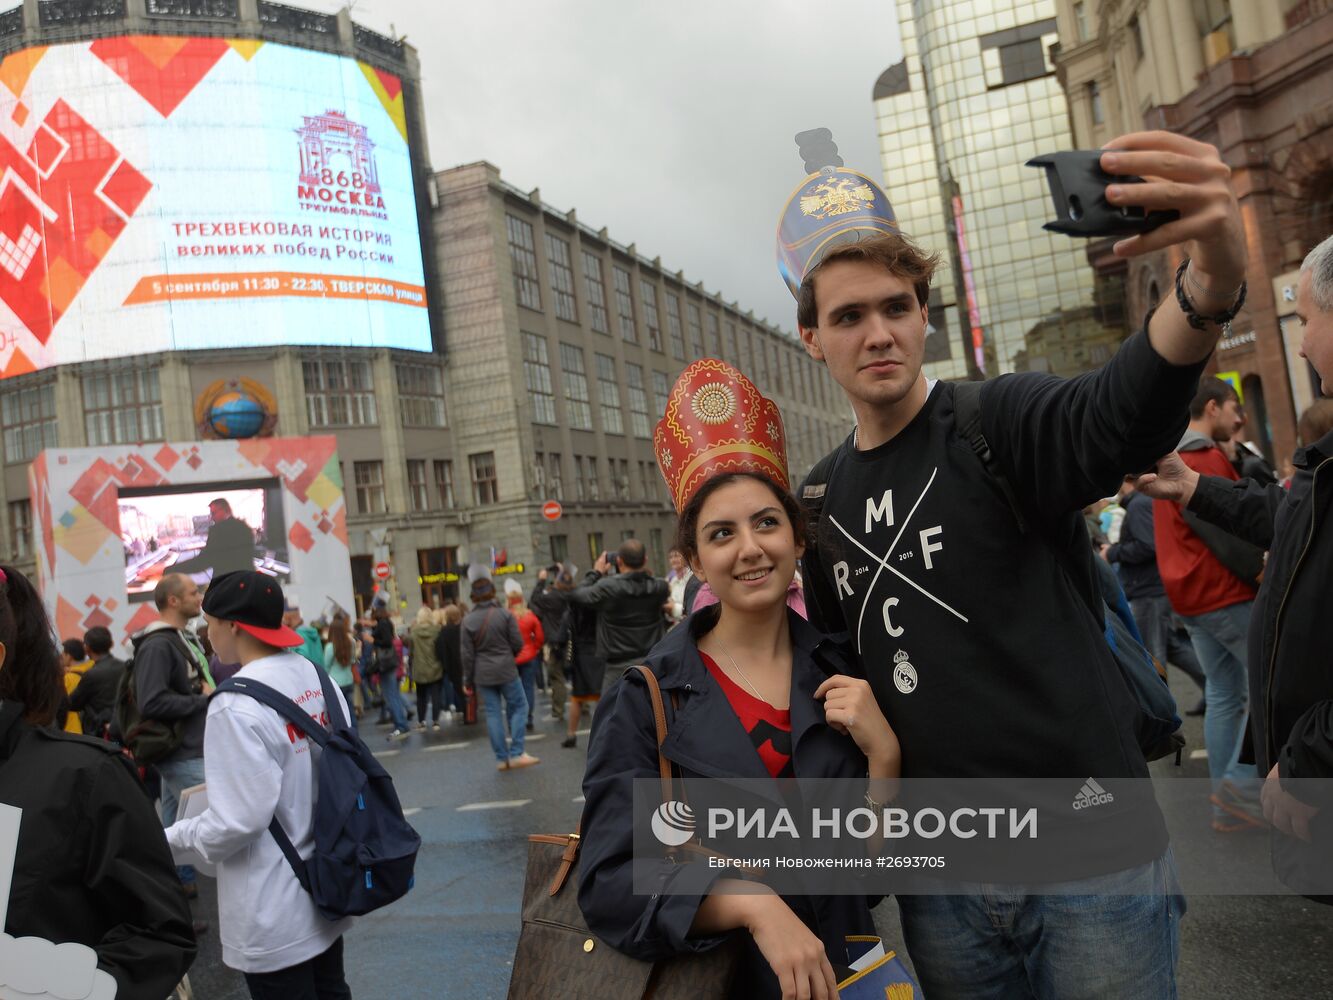 Празднование Дня города в Москве